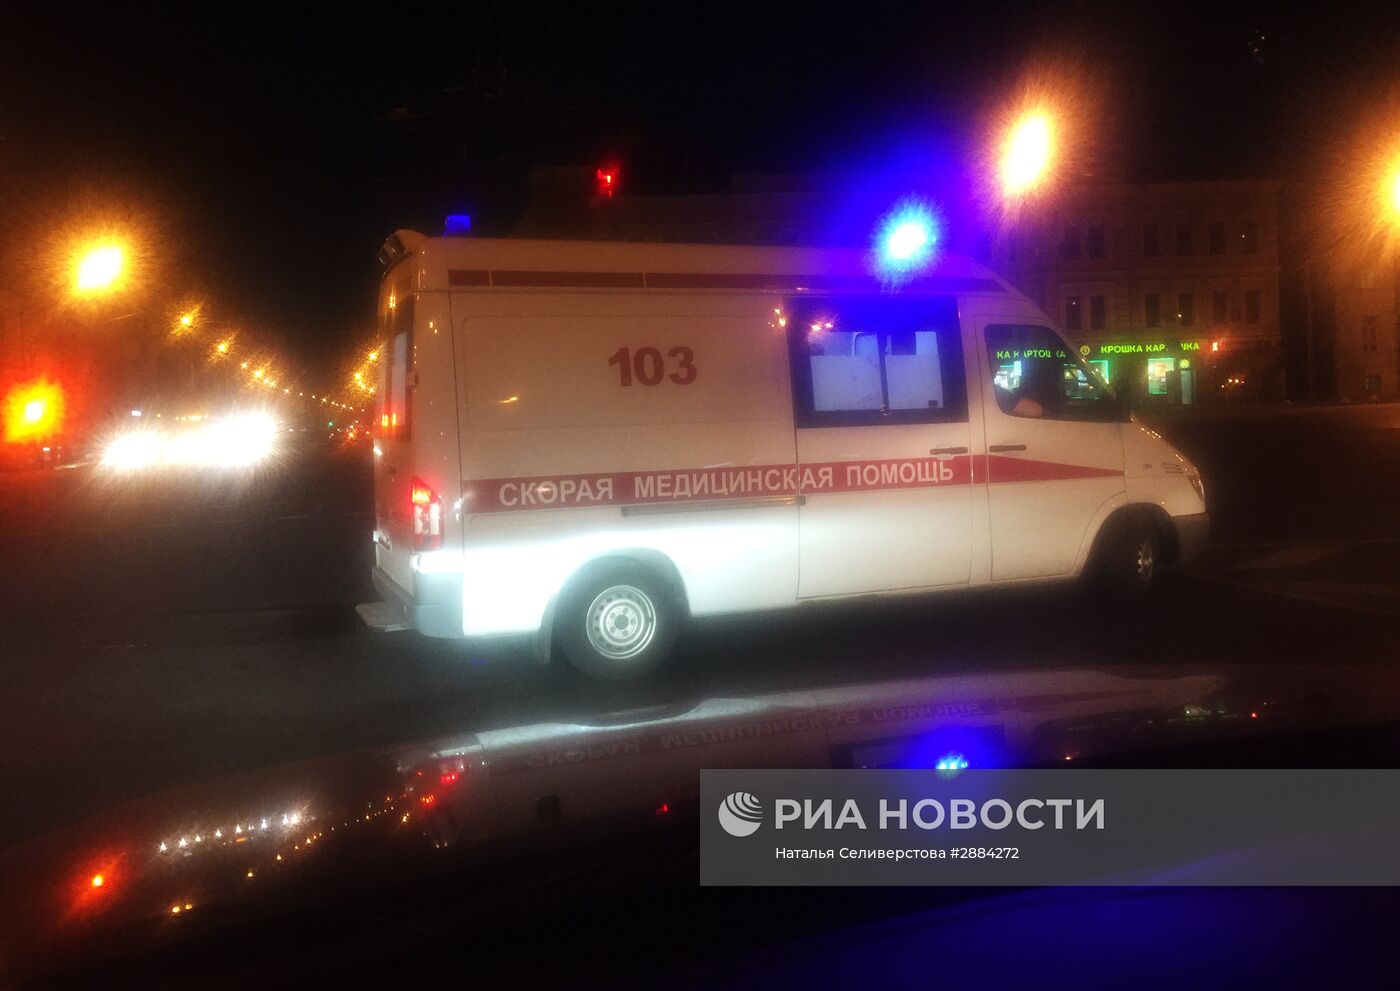 Автомобиль скорой медицинской помощи в Москве